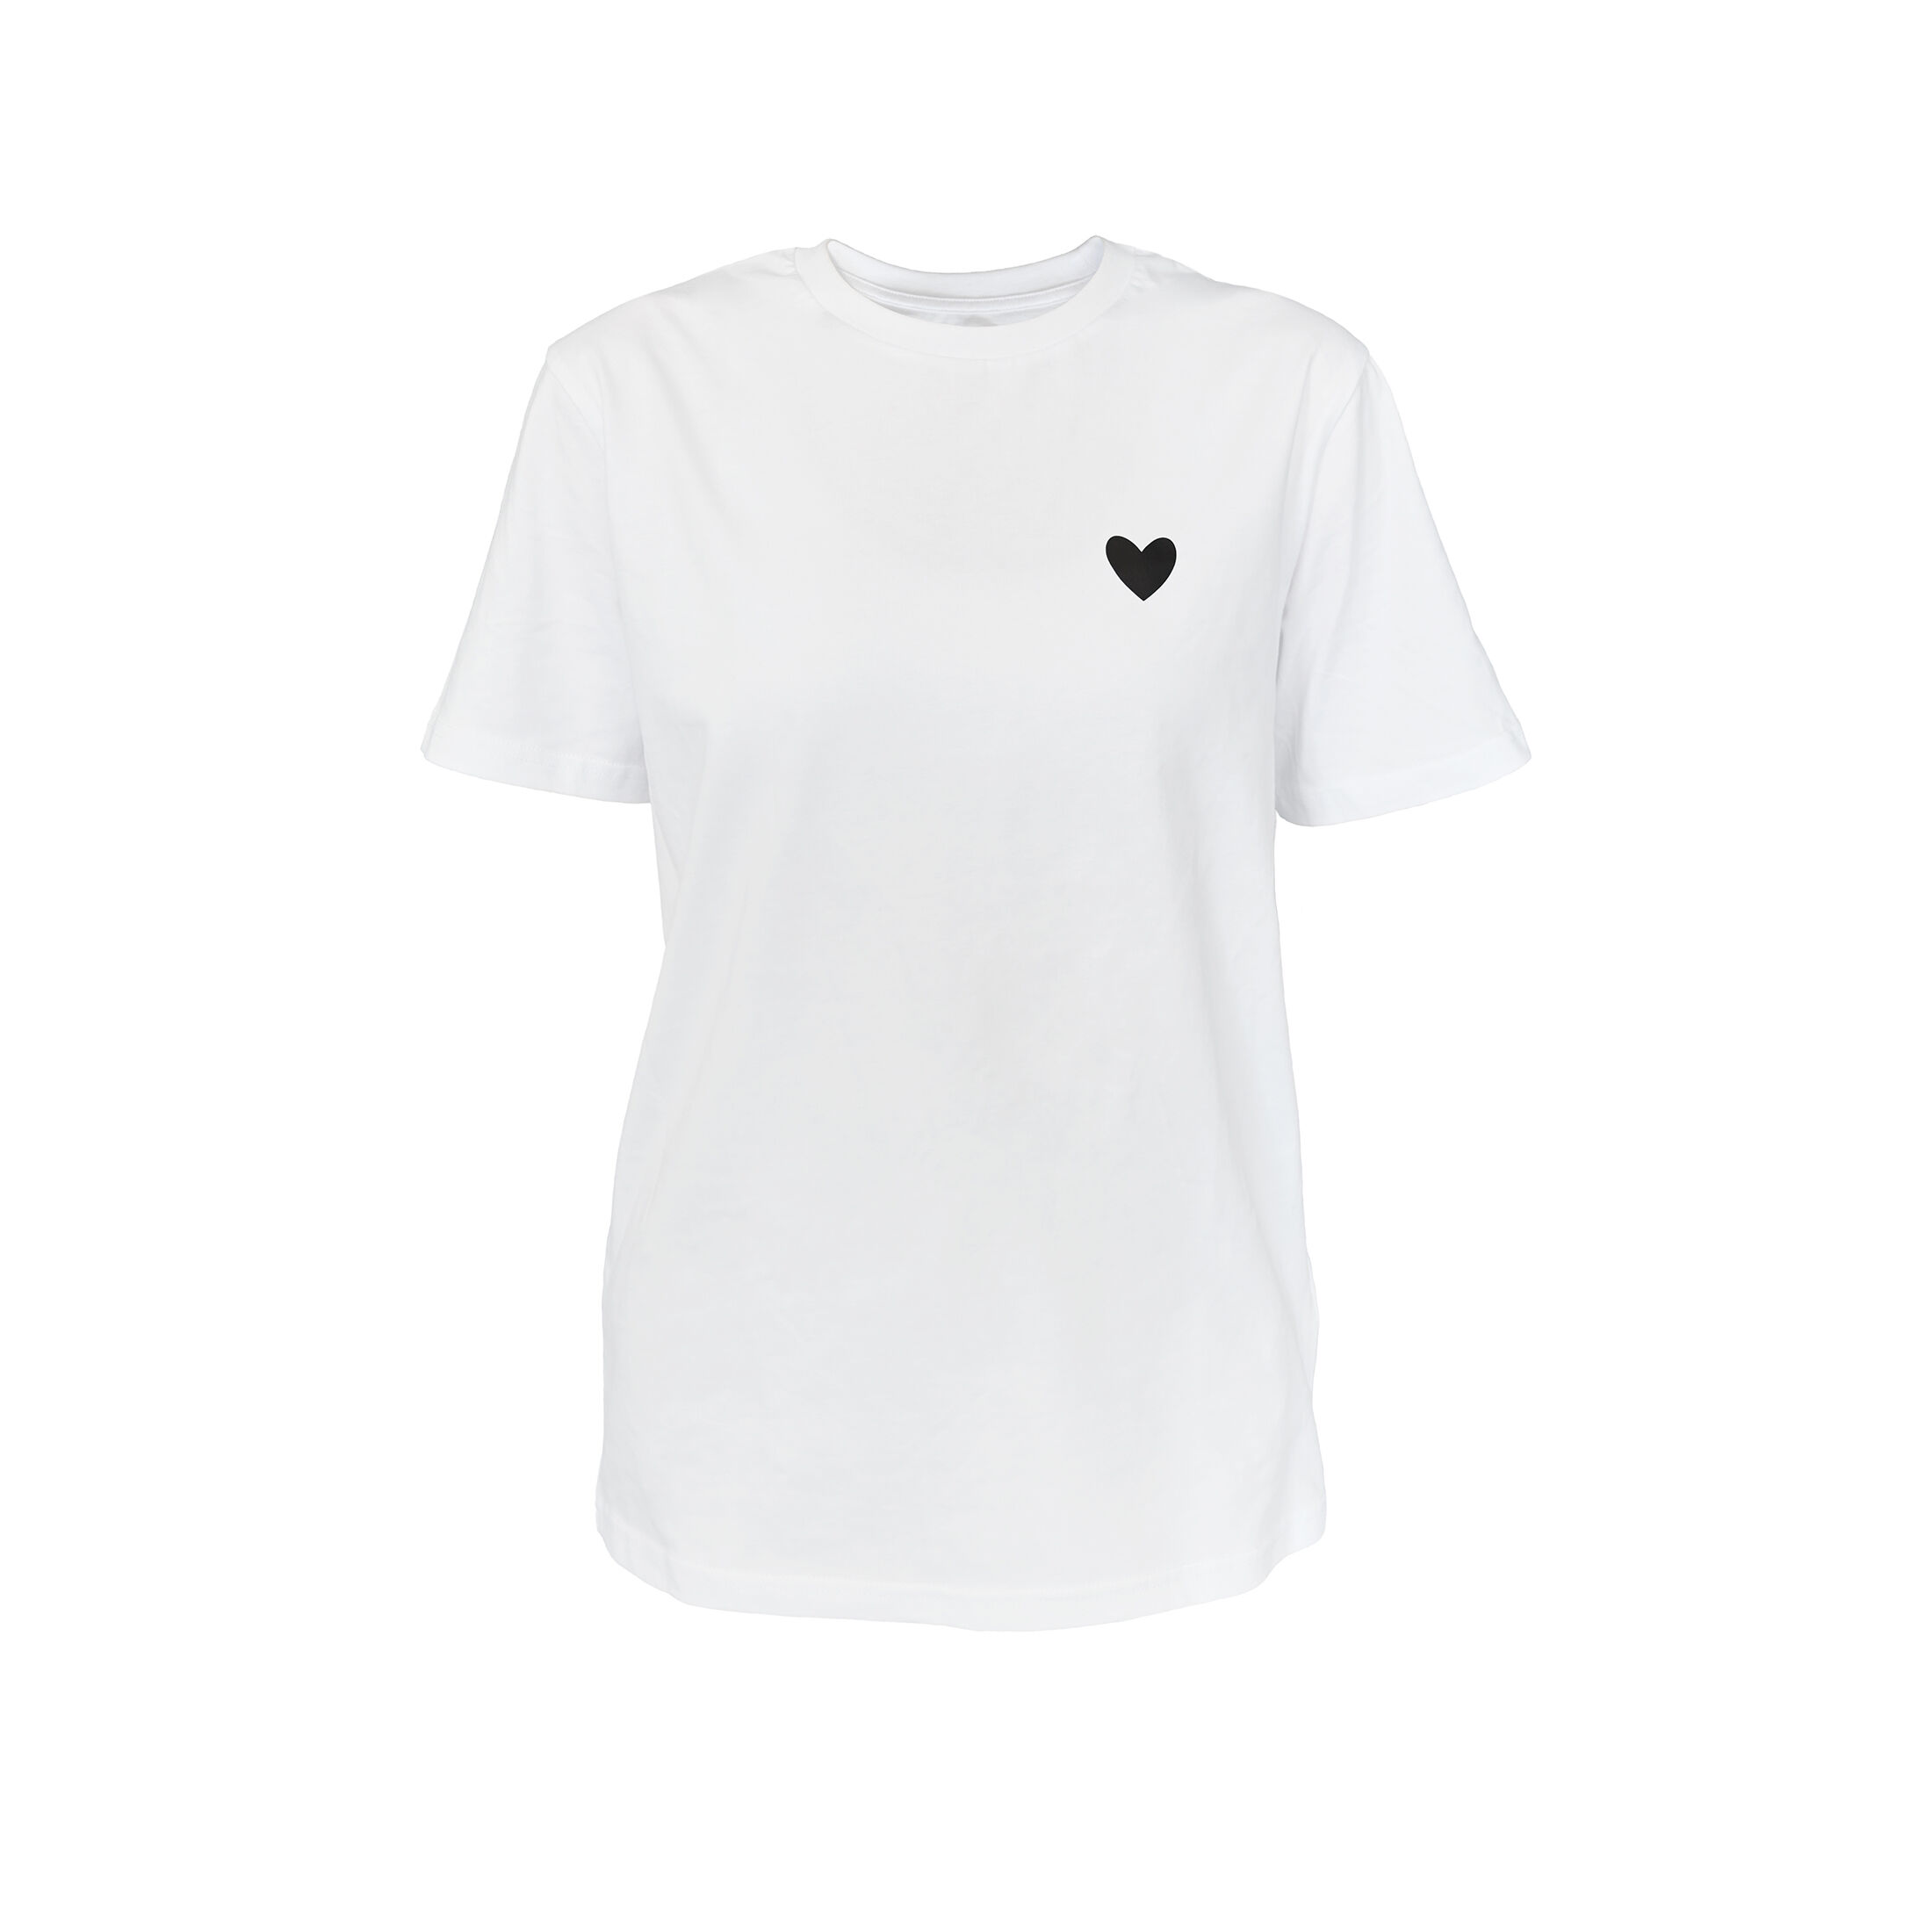 Schwarz Herz Weiss kaufen Damen T-Shirt für jetzt CRICKIT JODIE T-Shirt